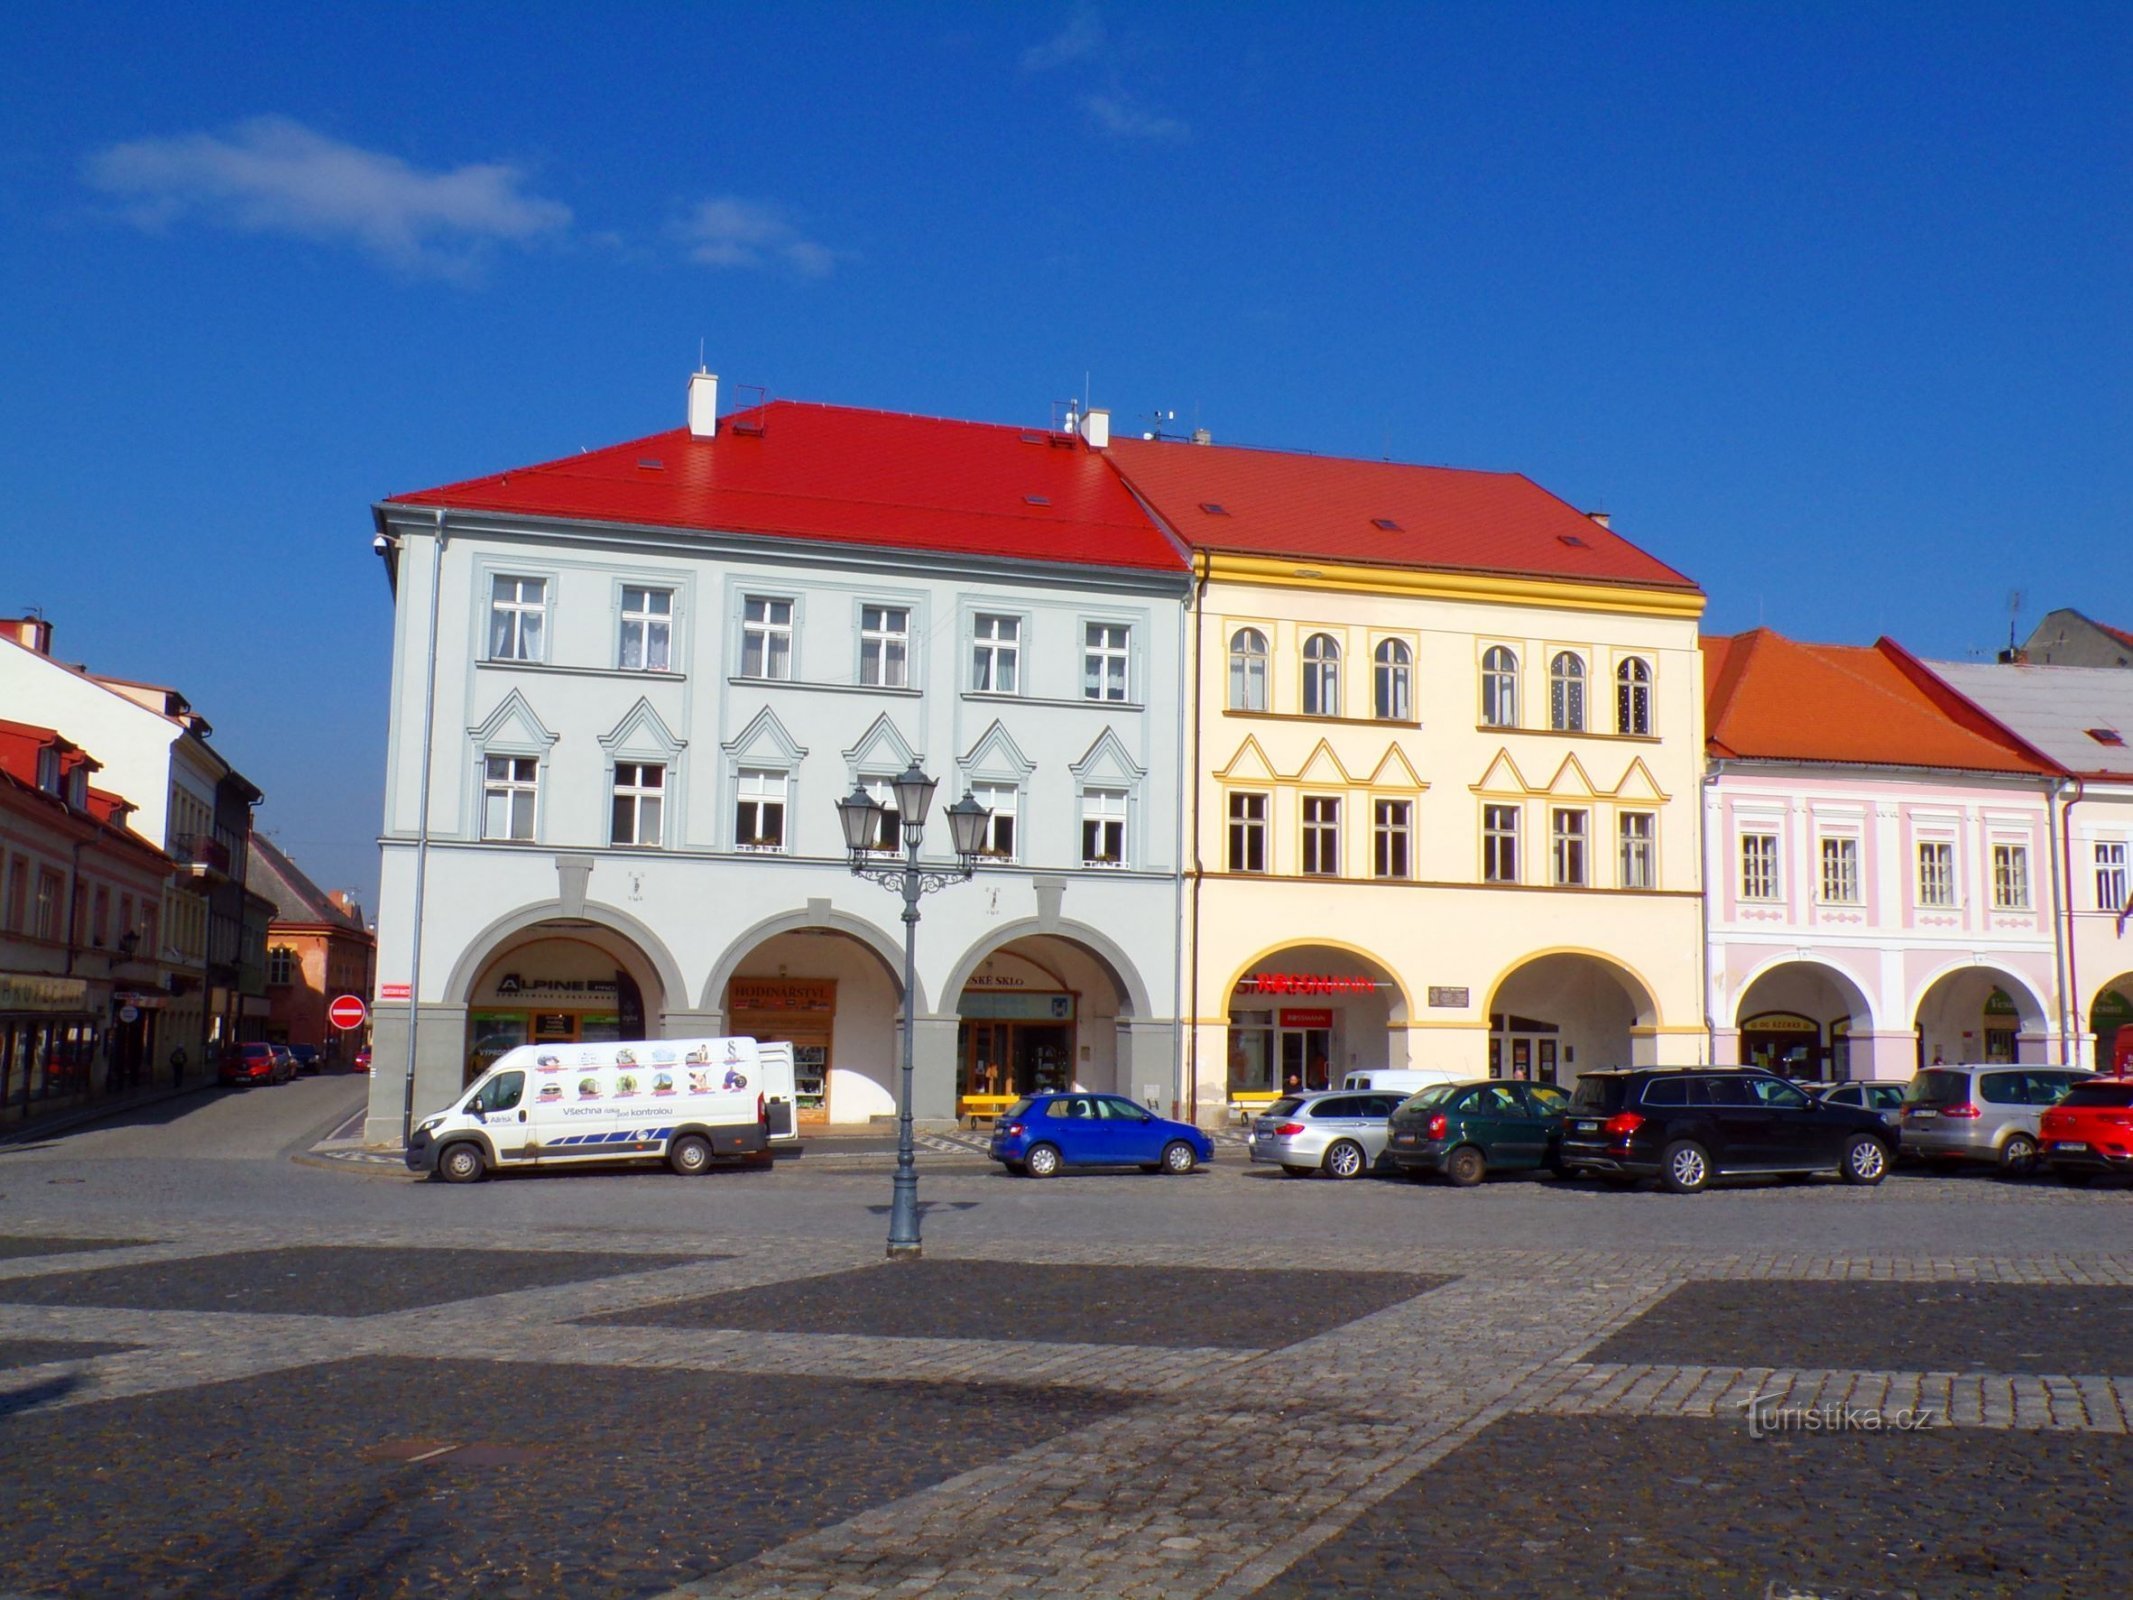 Palackého no. 73 and Valdštejnovo náměstí no. 74 (Jičín, 3.3.2022/XNUMX/XNUMX)